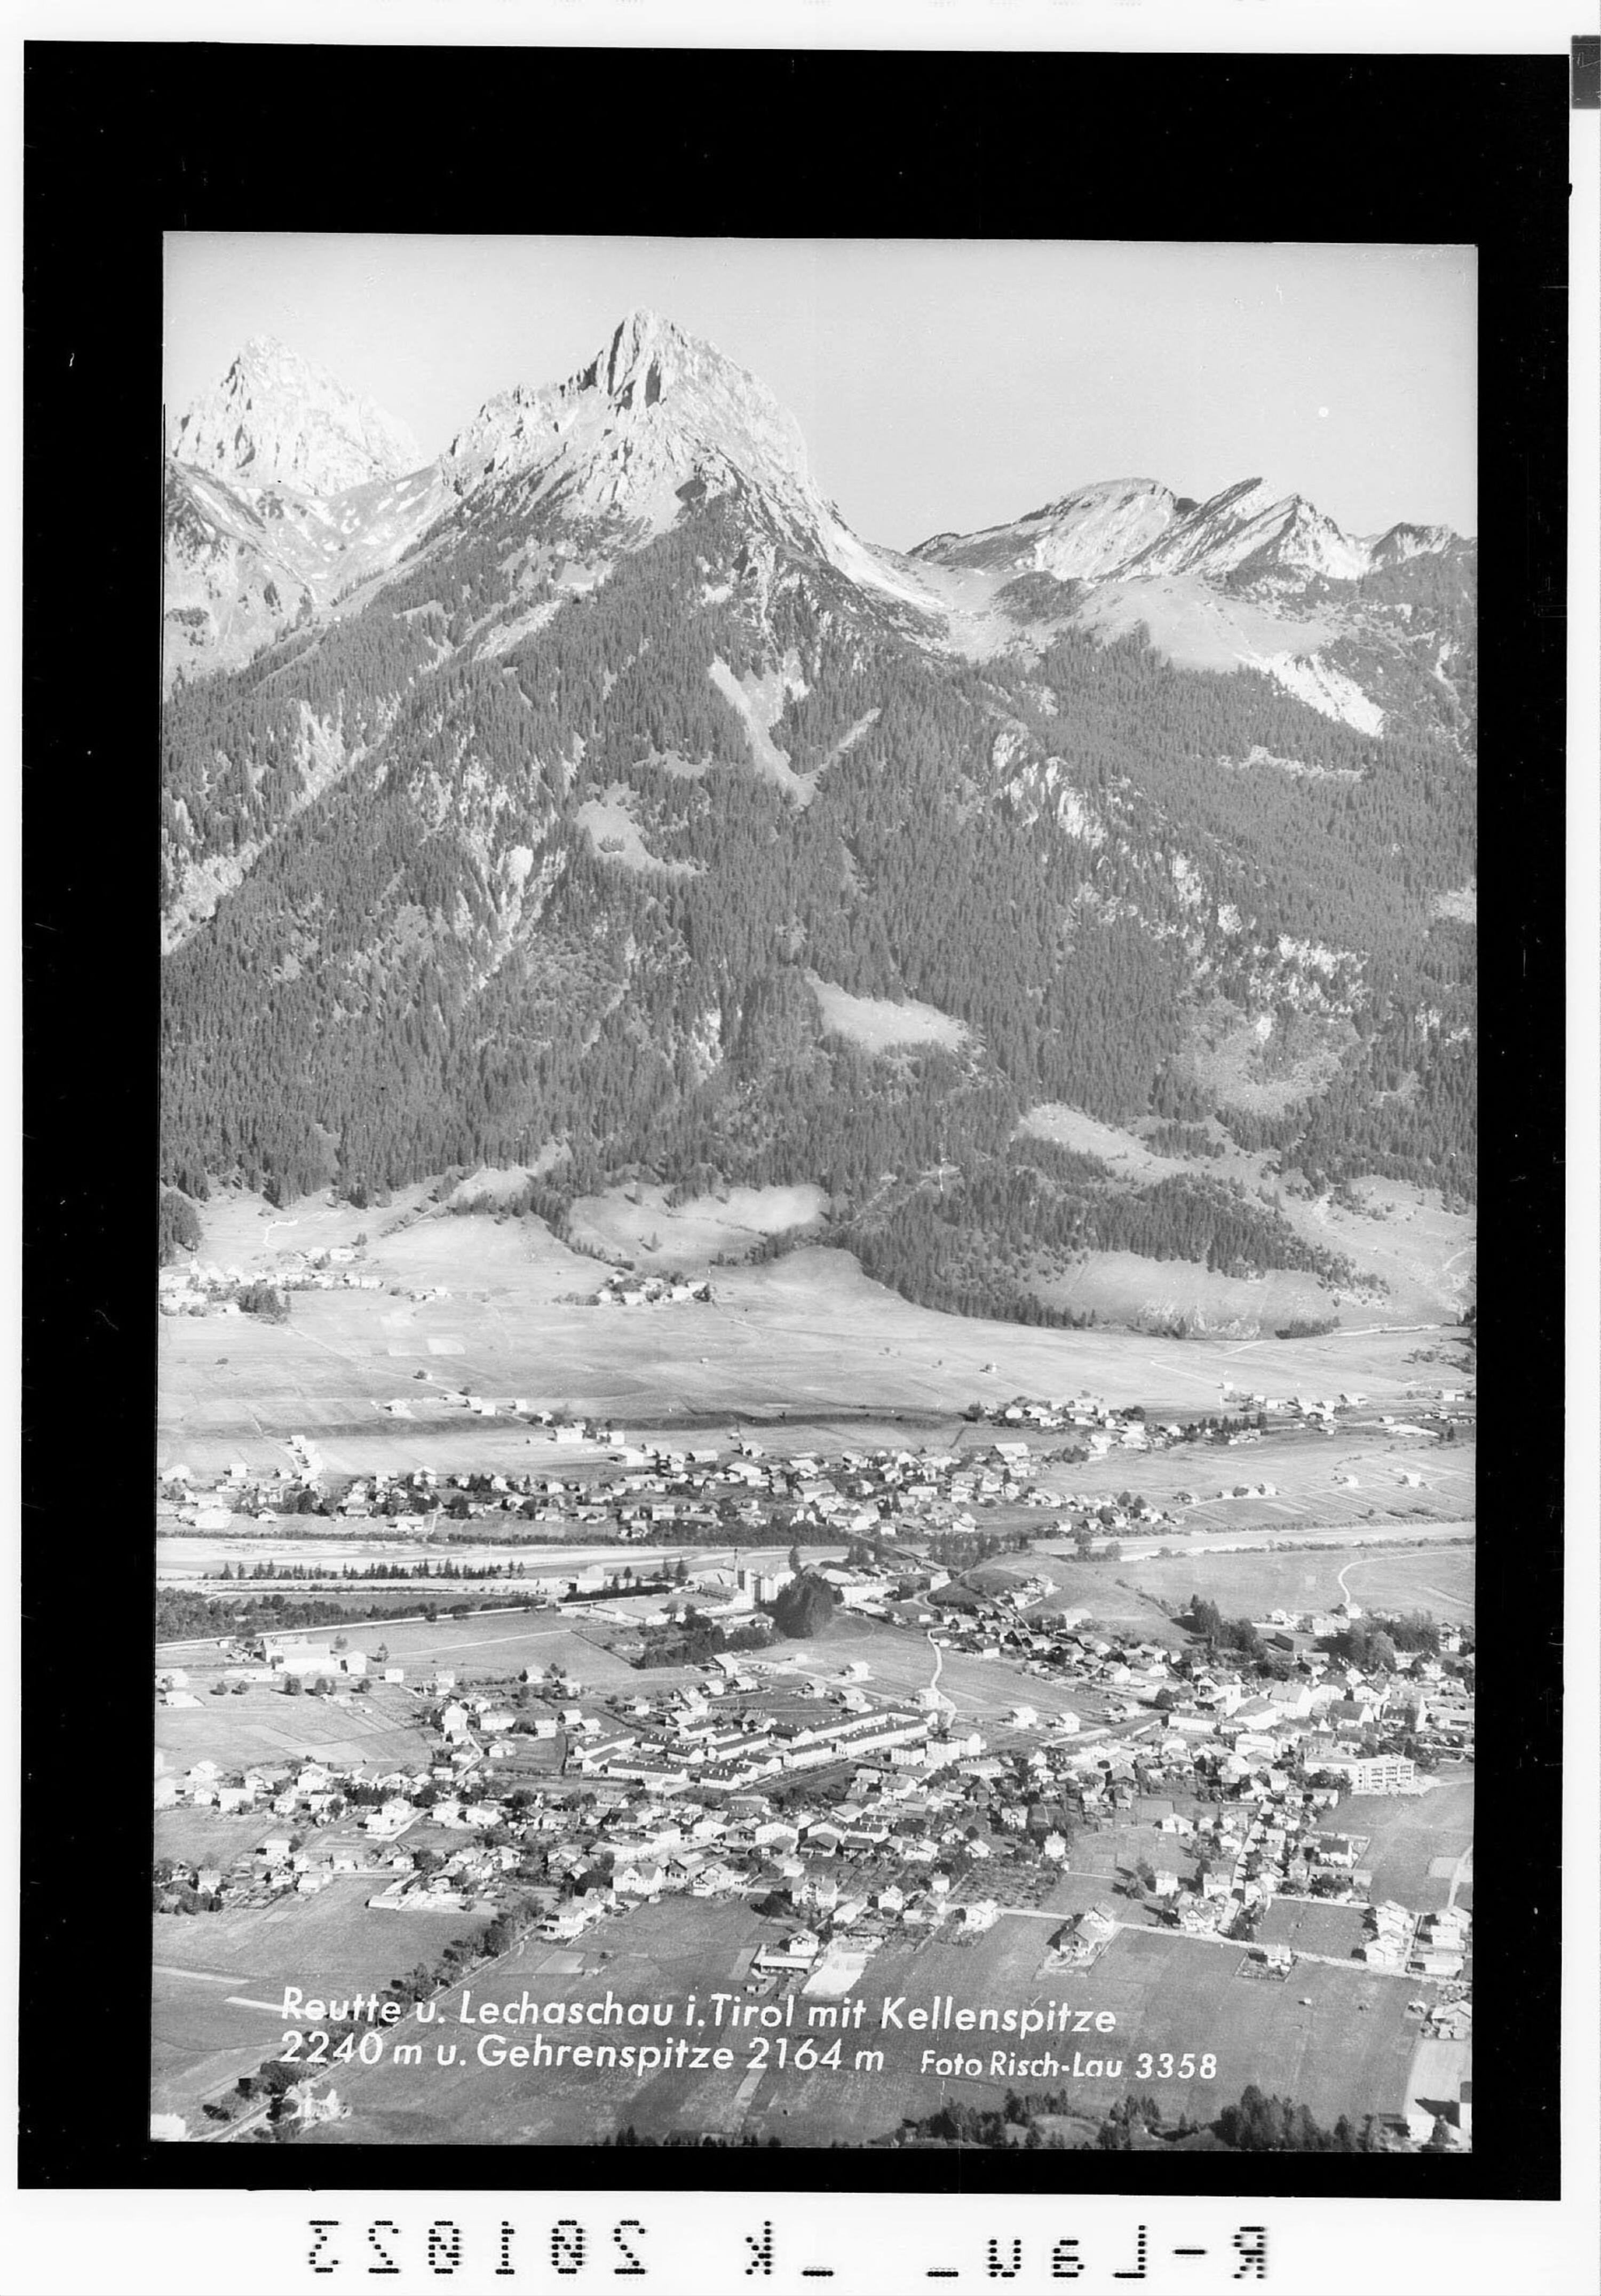 Reutte und Lechaschau in Tirol mit Kellenspitze 2240 m und Gehrenspitze 2164 m></div>


    <hr>
    <div class=